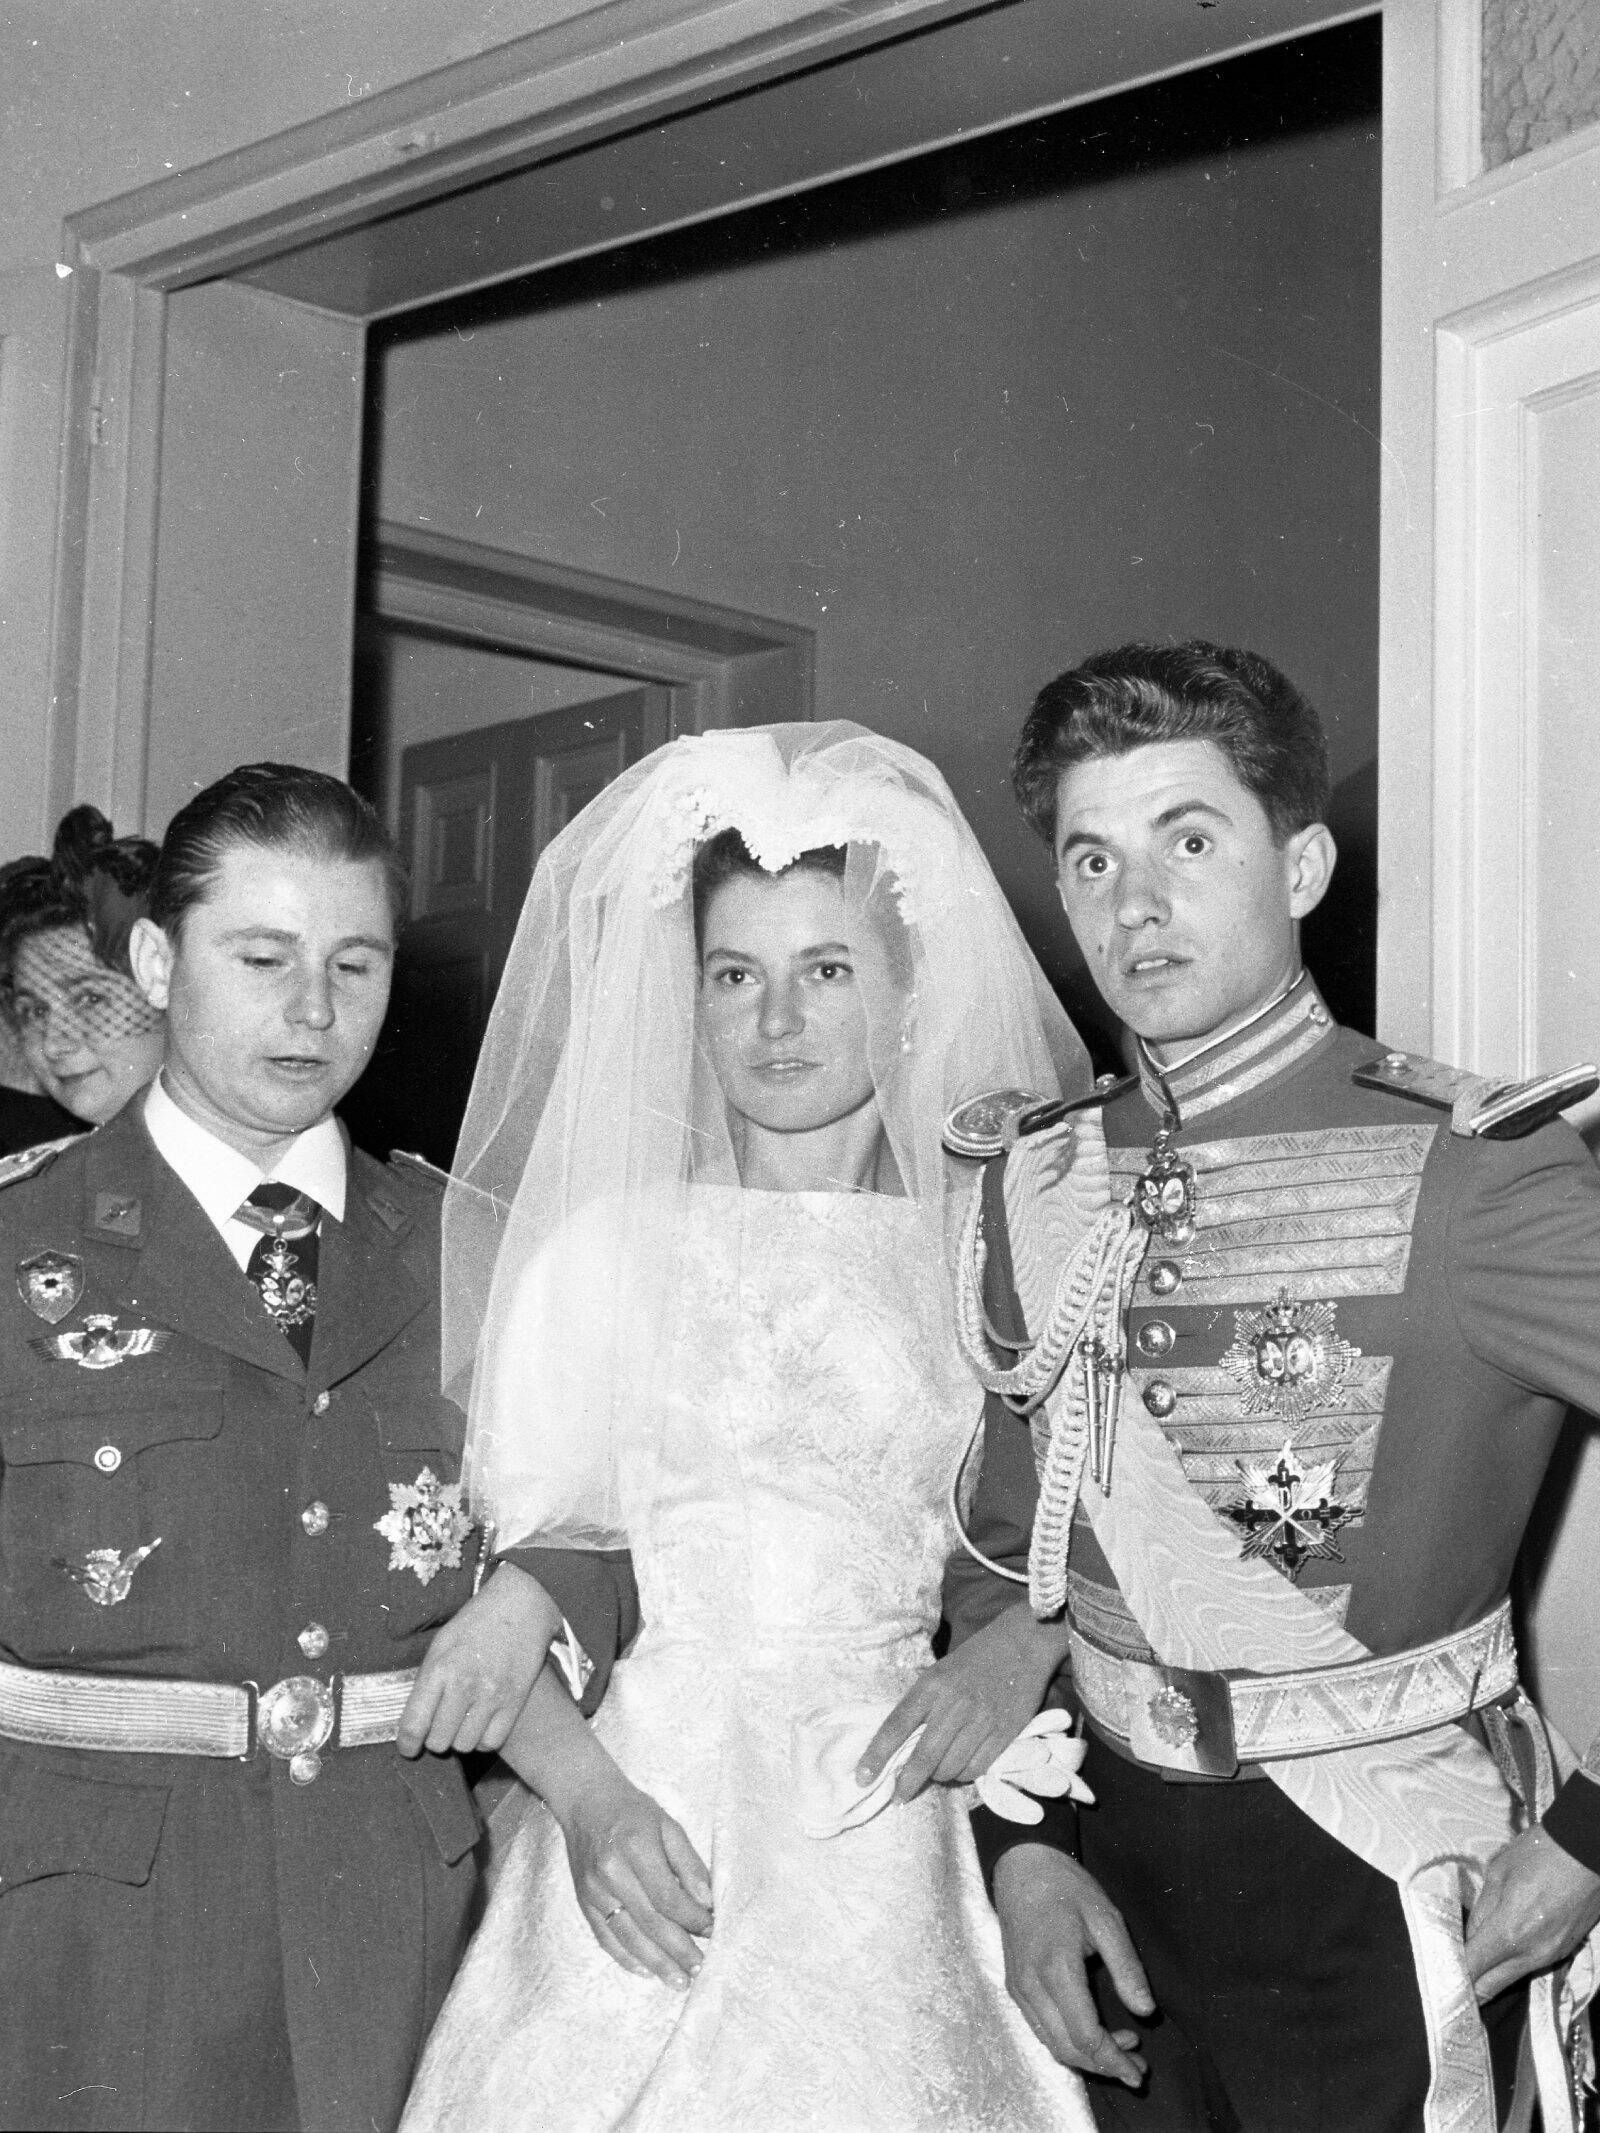 La boda de Teresa de Borbón-Dos Sicilias y Borbón-Parma con Íñigo Moreno y de Arteaga, en abril de 1961. (Europa Press)